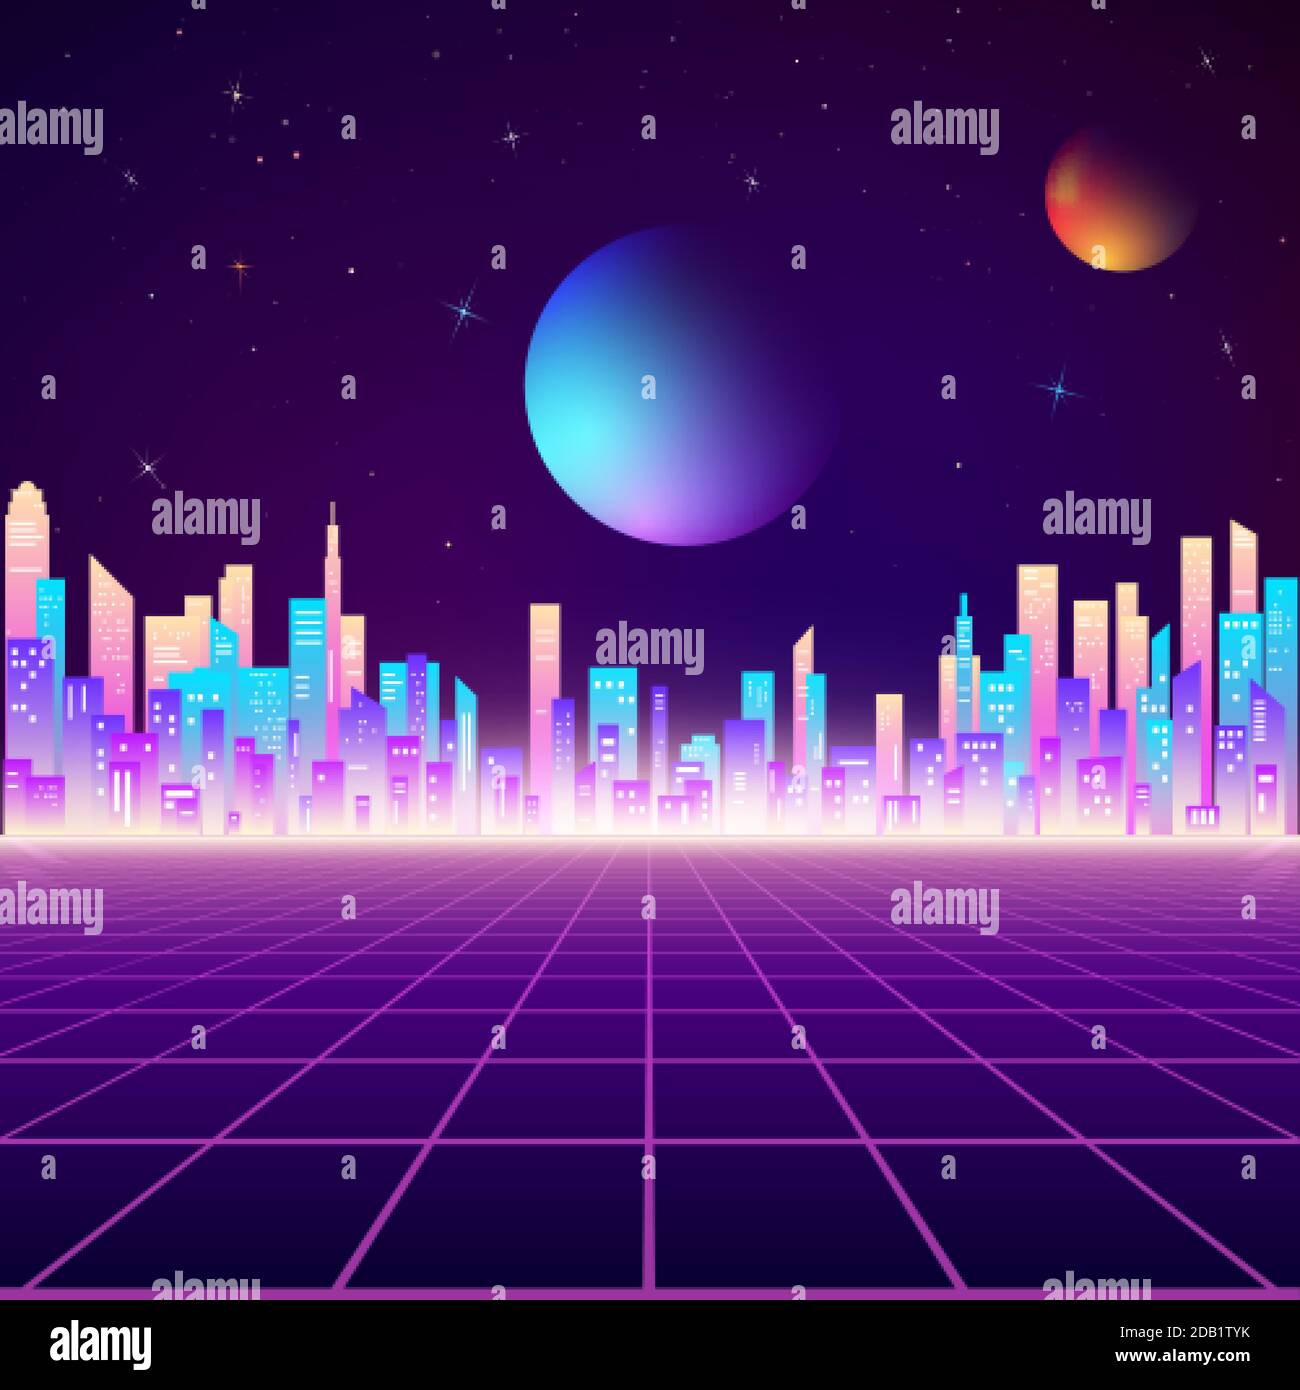 Retro city landscape in neon colors. Cyberpunk futuristic town. Sci-fi background abstract digital architecture. Vector illustration Stock Vector